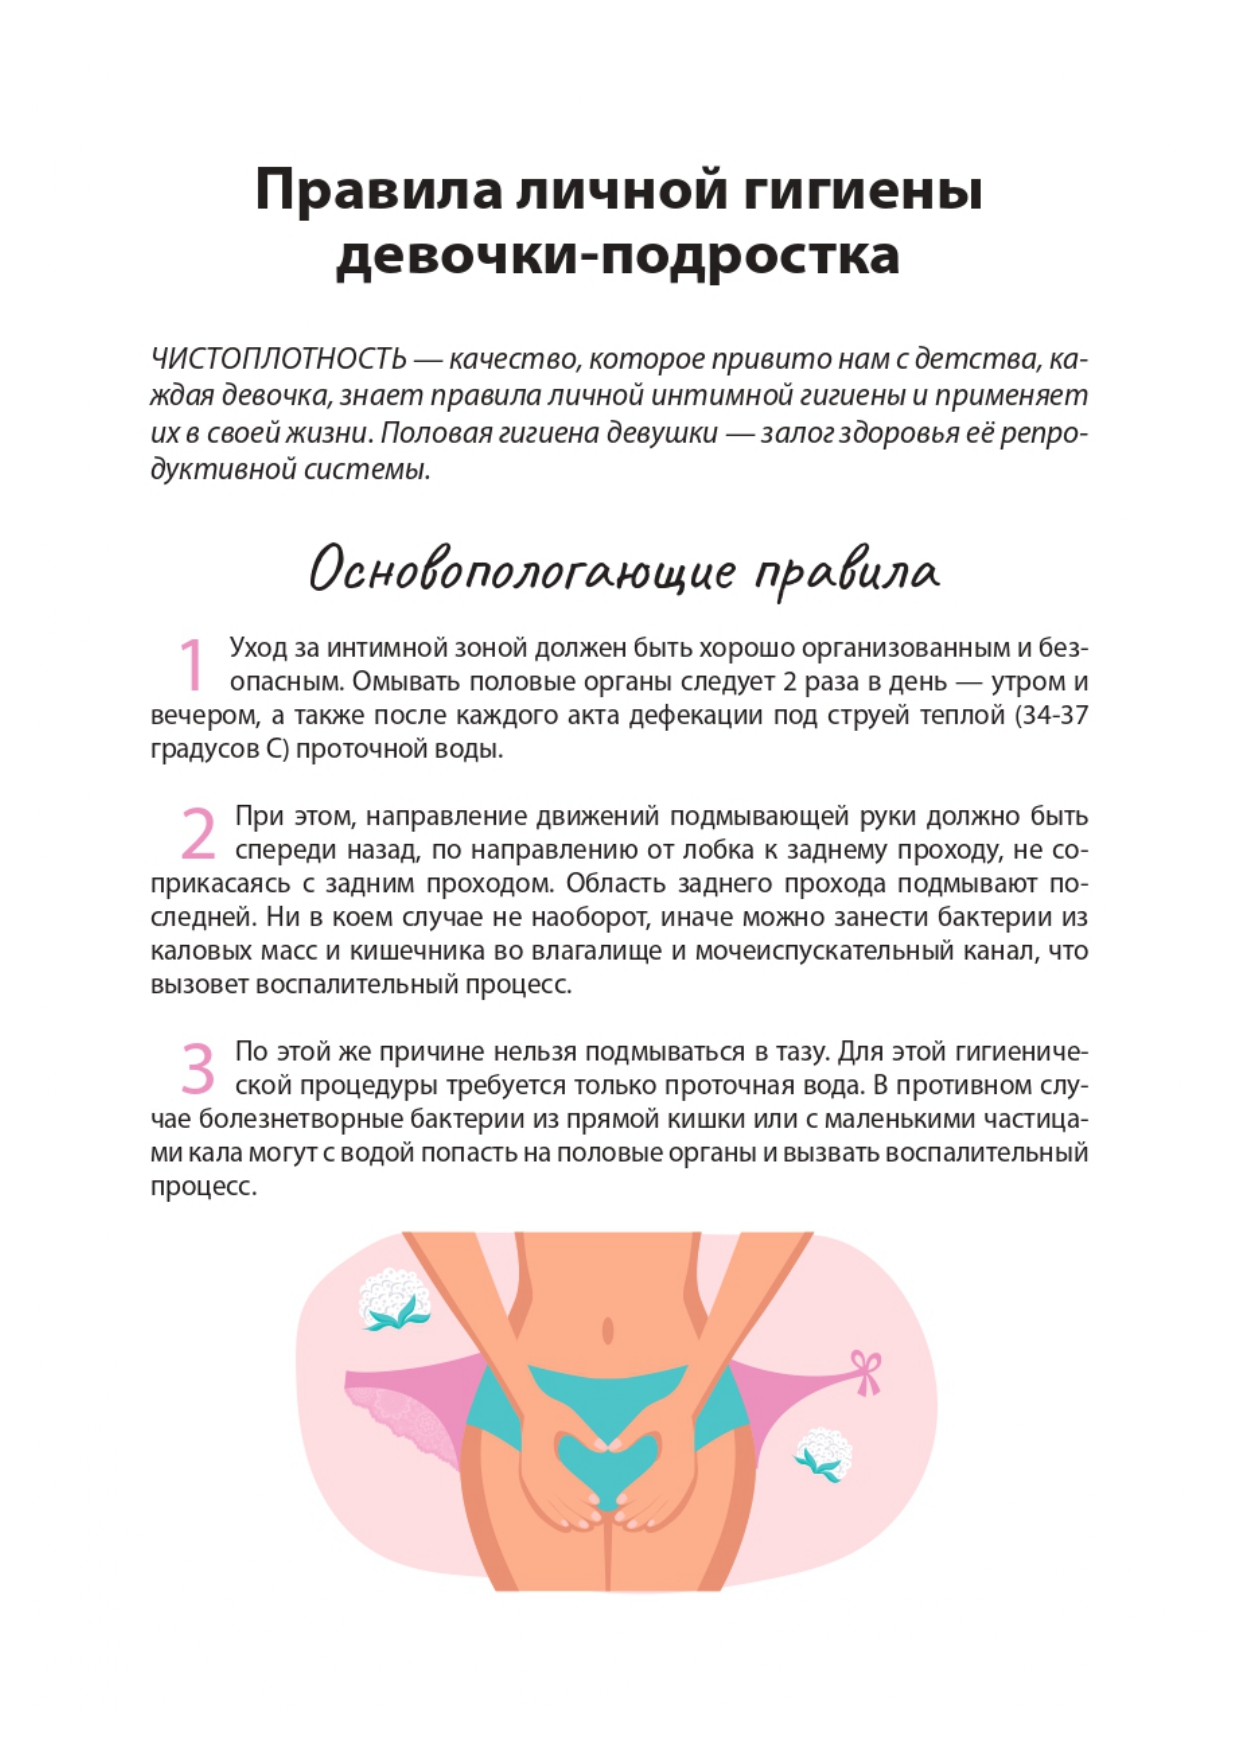 reproduktivnoe-zdorove-devochkam page-0003